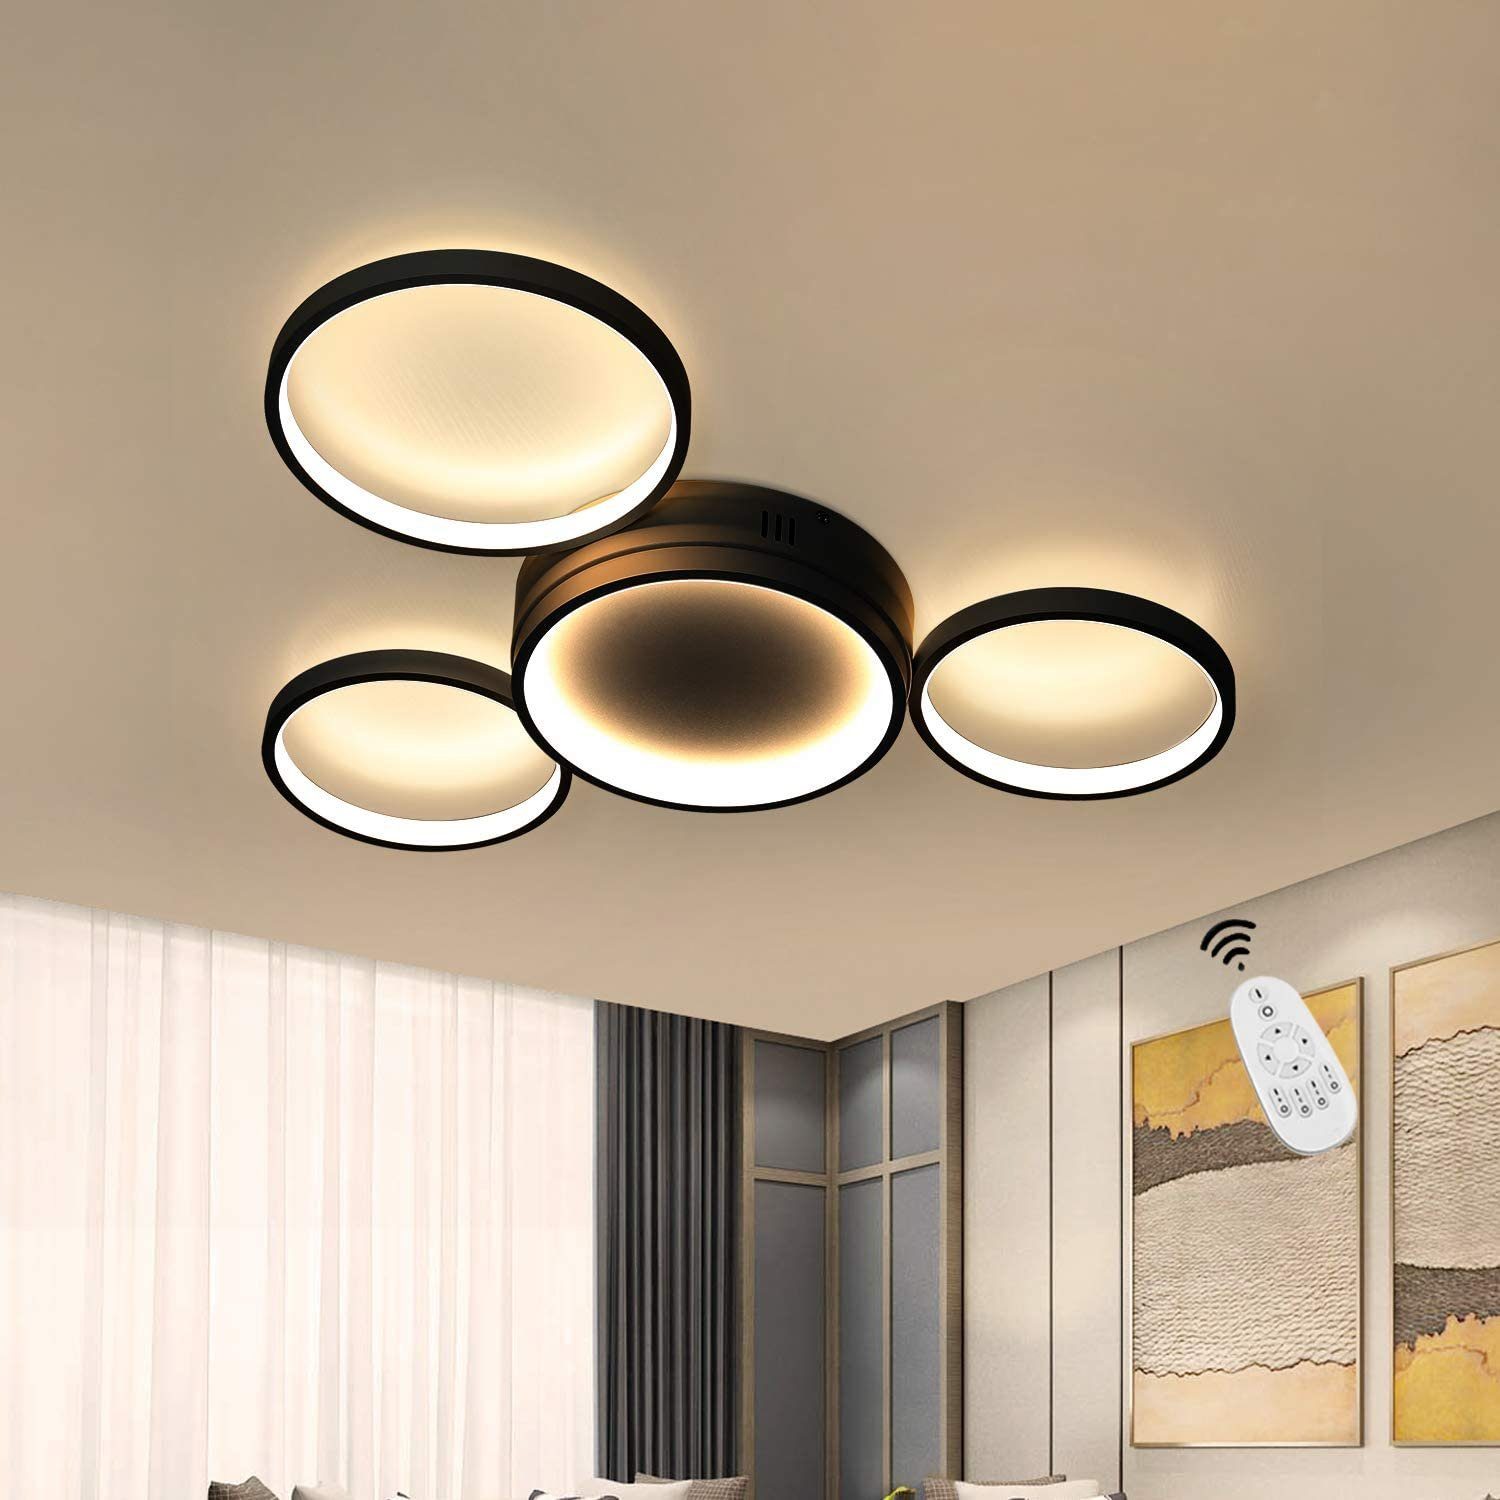 ZMH LED Deckenleuchte »Deckenlampe Modern 4 Flammig in Ring-Design dimmbar  mit Fernbedienung 52W für Schlafzimmer Wohnzimmer Flur Büro Arbeitszimmer«,  LED fest integriert